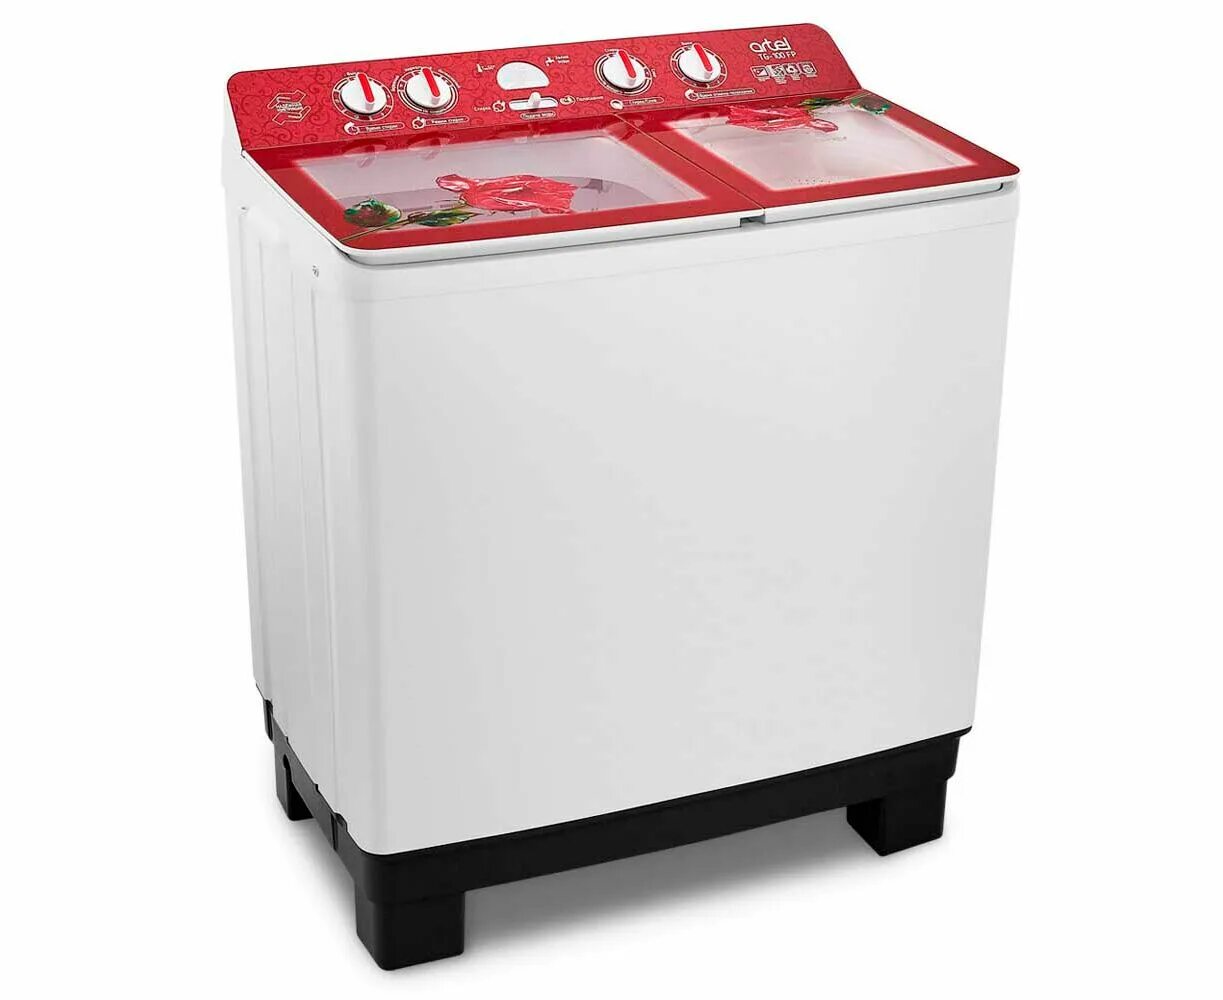 Артель машина. Стиральная машина Artel tg100. Полуавтомат стиральная машина Артел. Стиральная машина TG 100 FP. Artel-TG 100 F P (красный) (10кг).